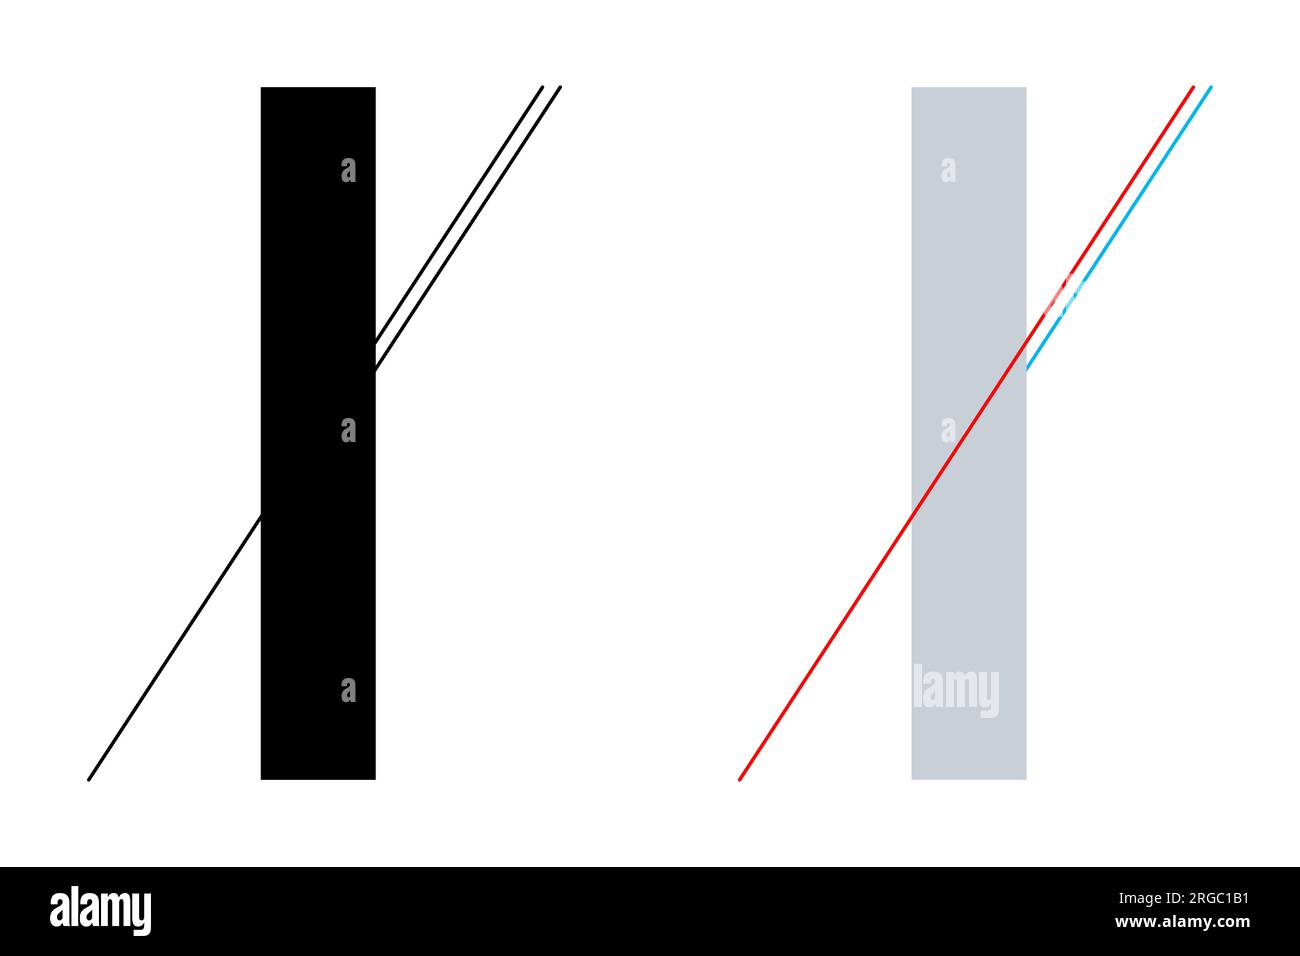 Poggendorff geometrische optische Täuschung. Die Fortsetzung der Linie von unten links wird mit der kürzeren Linie auf der rechten Seite darunter verwechselt. Stockfoto